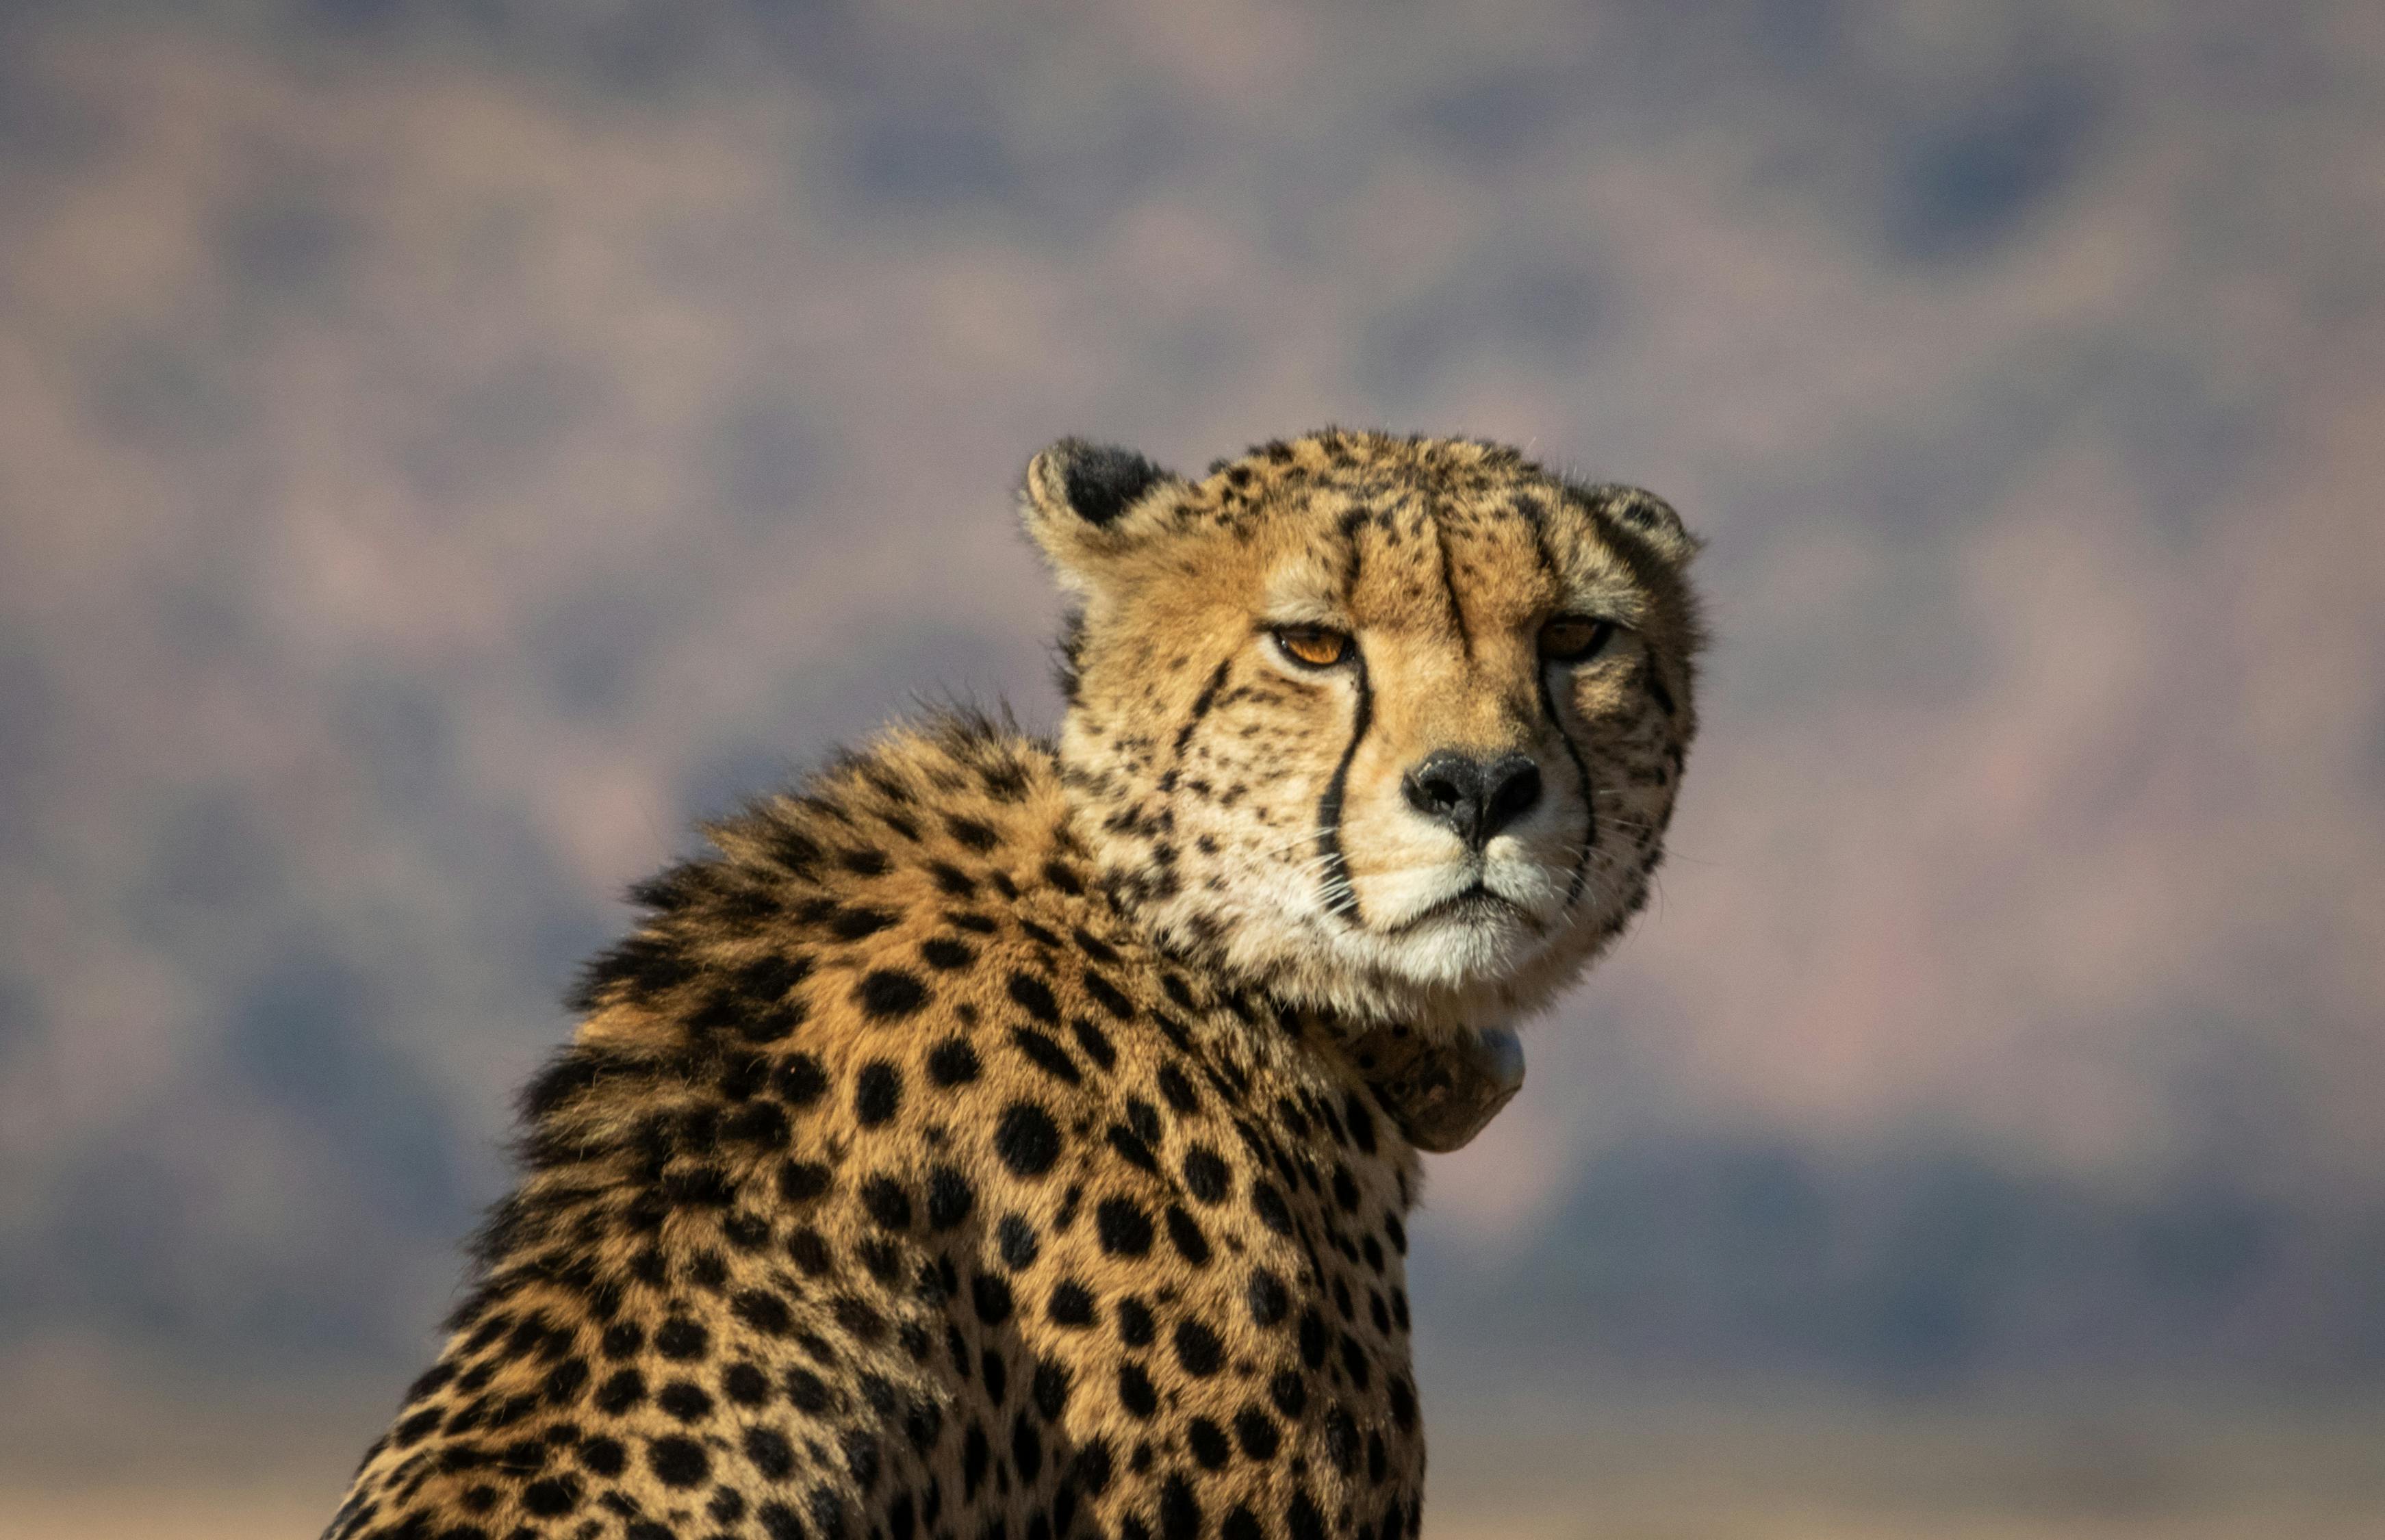 猎豹 Cheetah壁纸【1】(动物静态壁纸) - 静态壁纸下载 - 元气壁纸